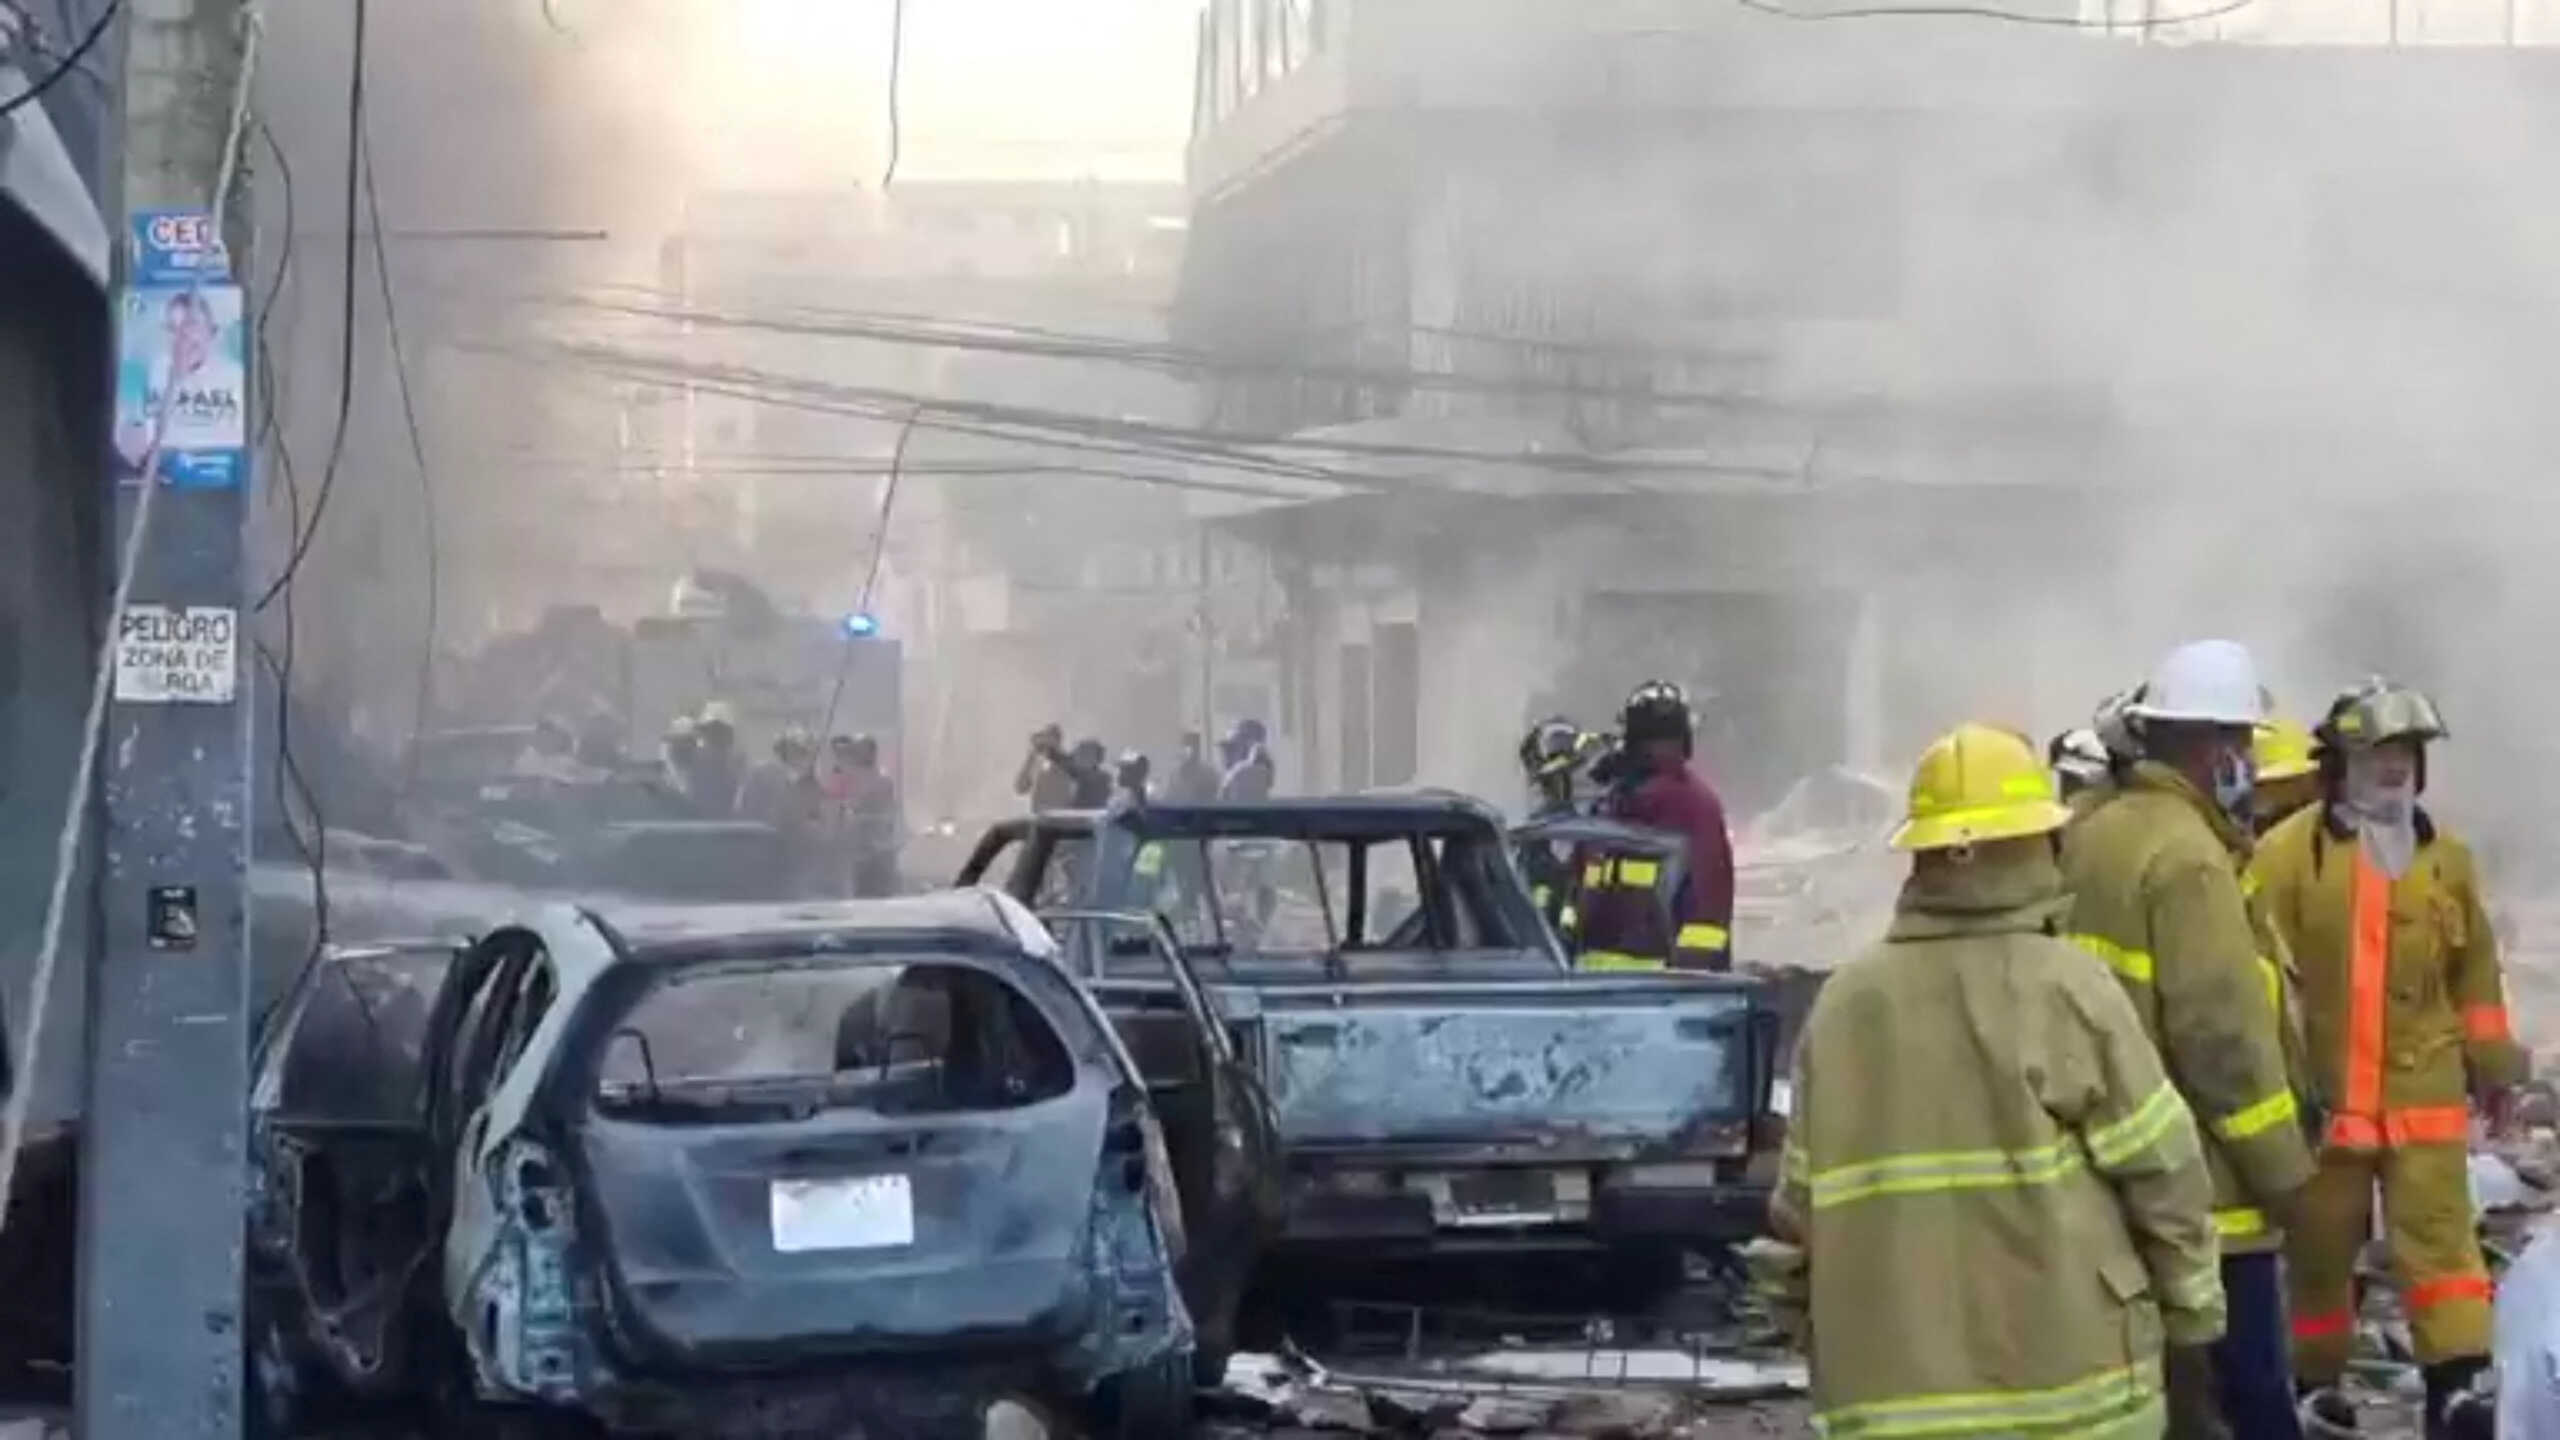 Δομινικανή Δημοκρατία: Τουλάχιστον 11 νεκροί, 59 τραυματίες και 11 αγνοούμενοι από την έκρηξη